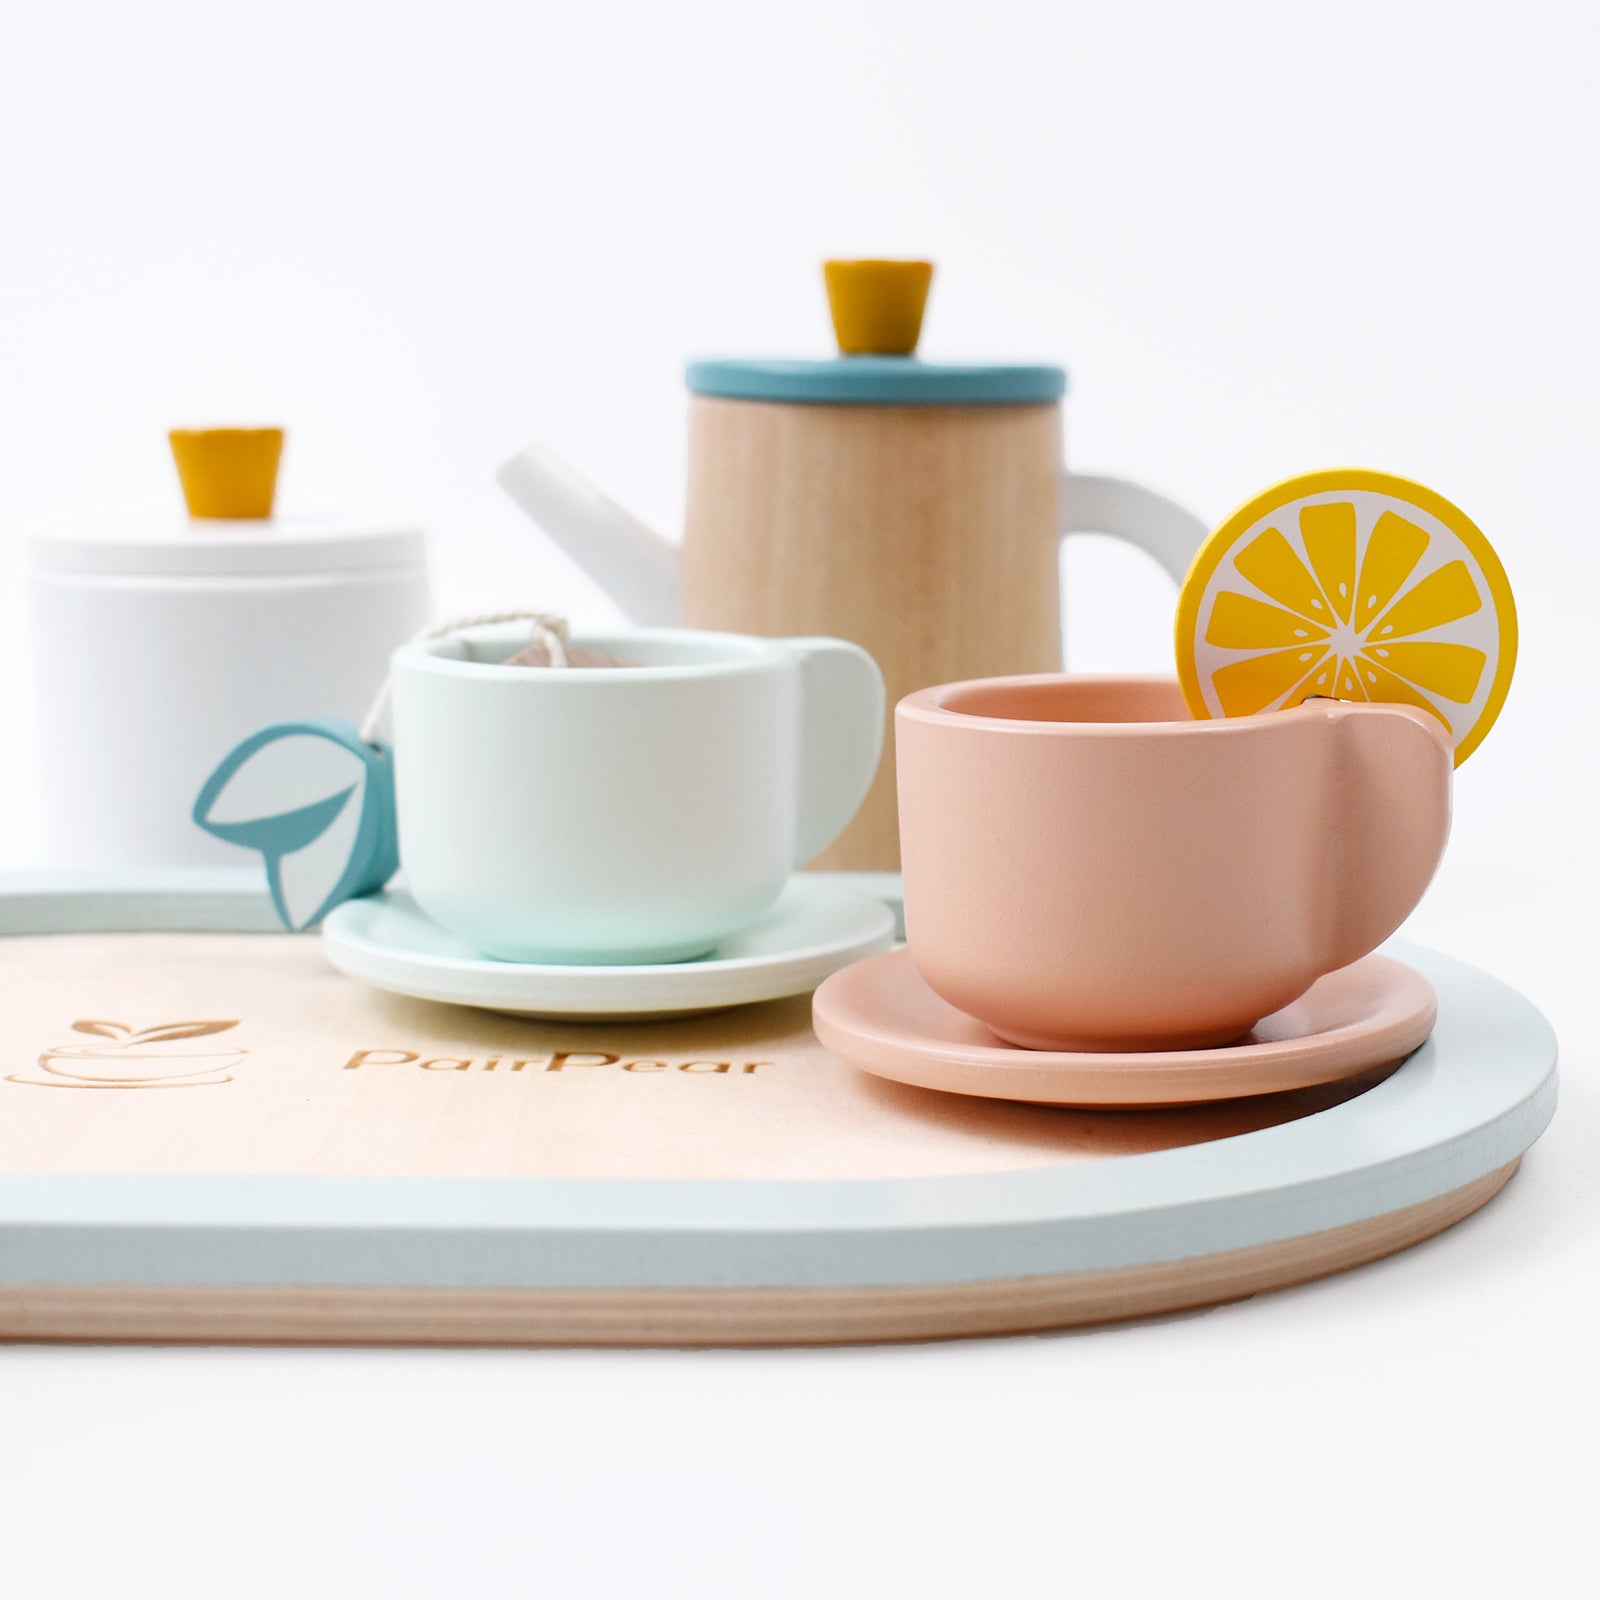 Wooden Tea Set – pairpeartoy